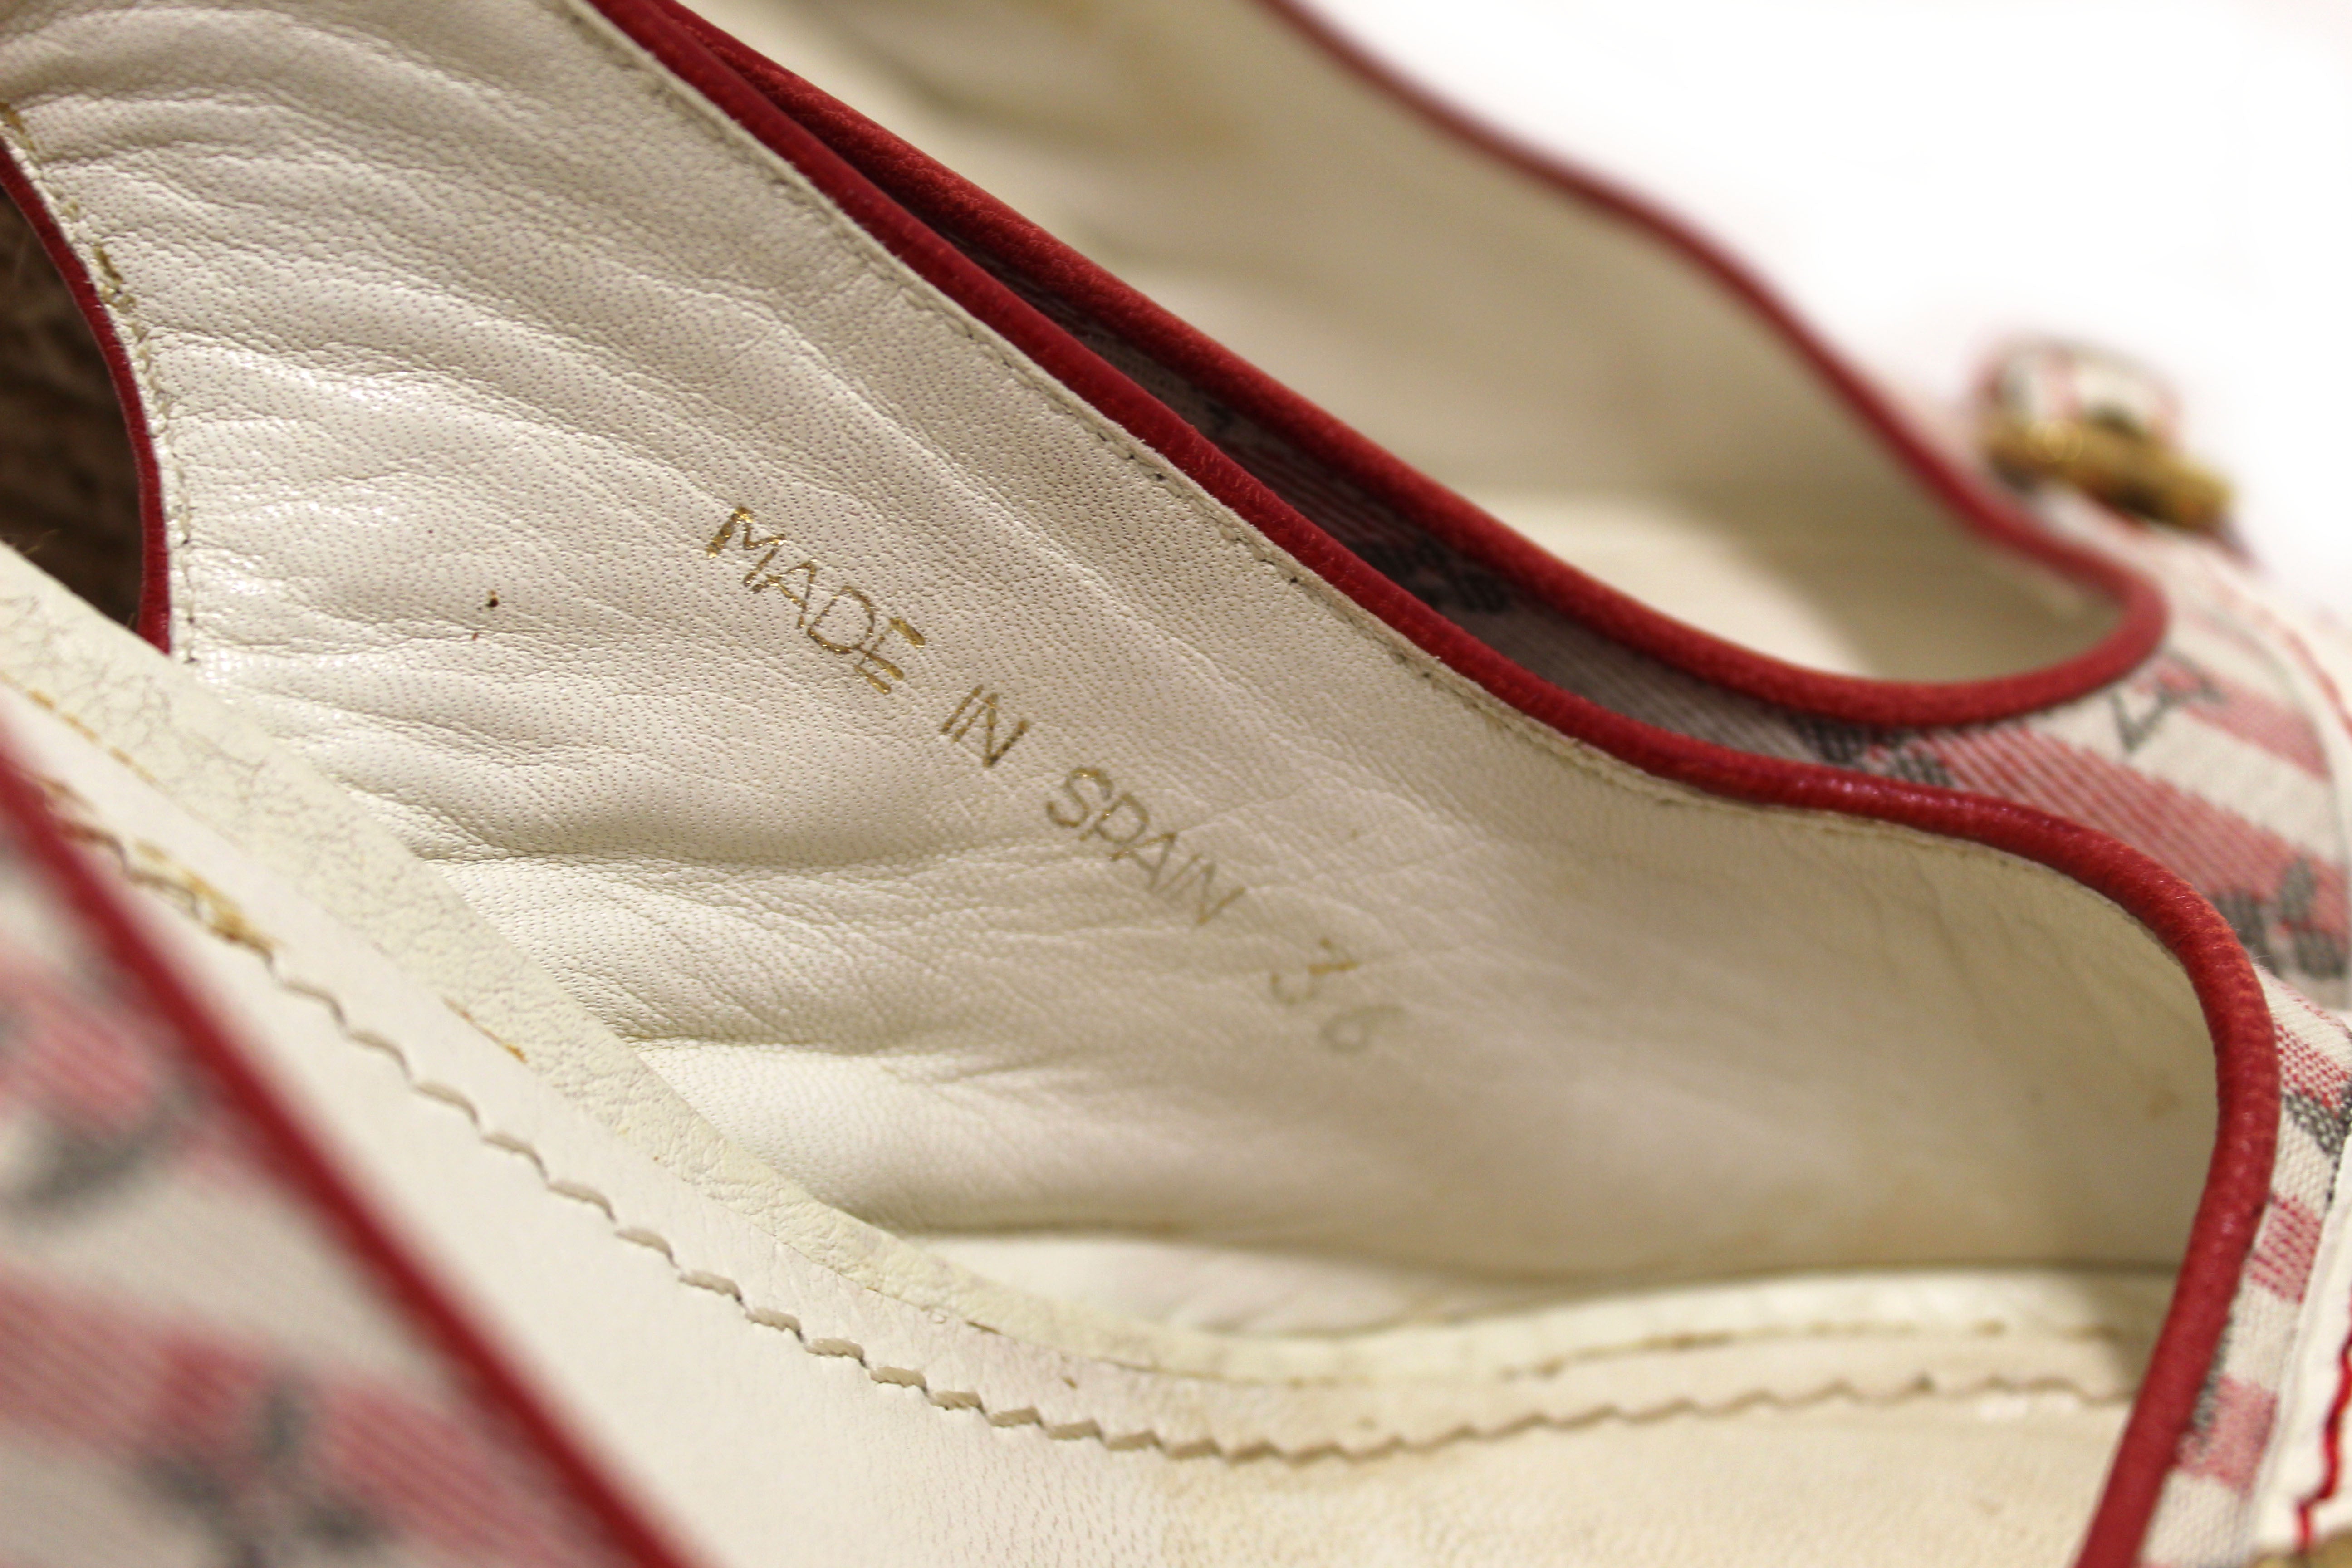 Authentic Louis Vuitton Red Mini Lin Croisette Anemone Wedges Sandals Size 36